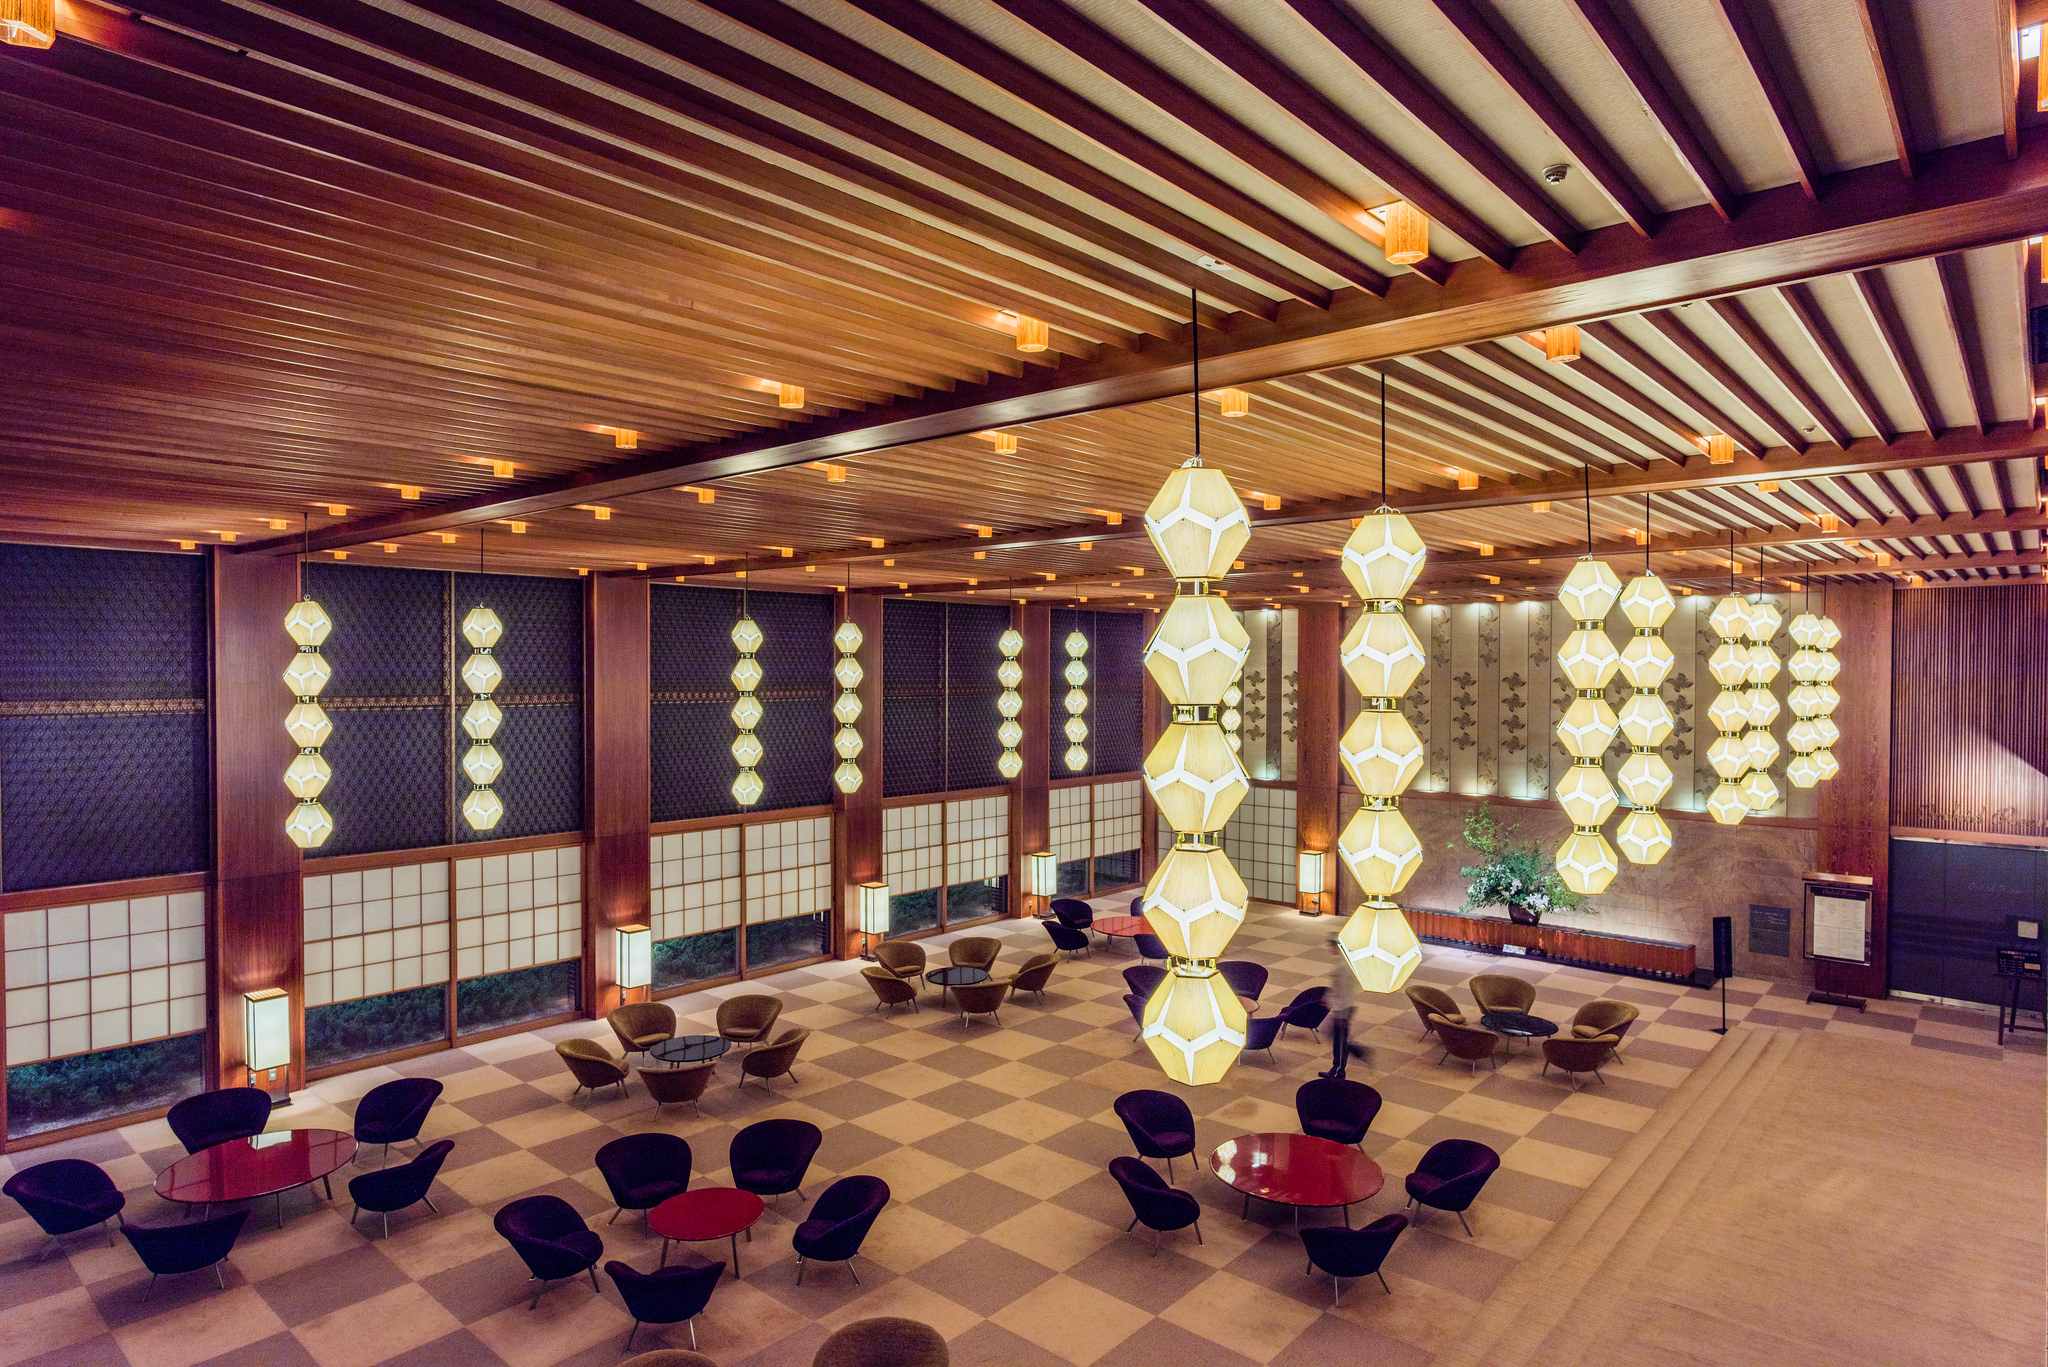 Die Lobby des Hotel Okura im Jahr 2015.